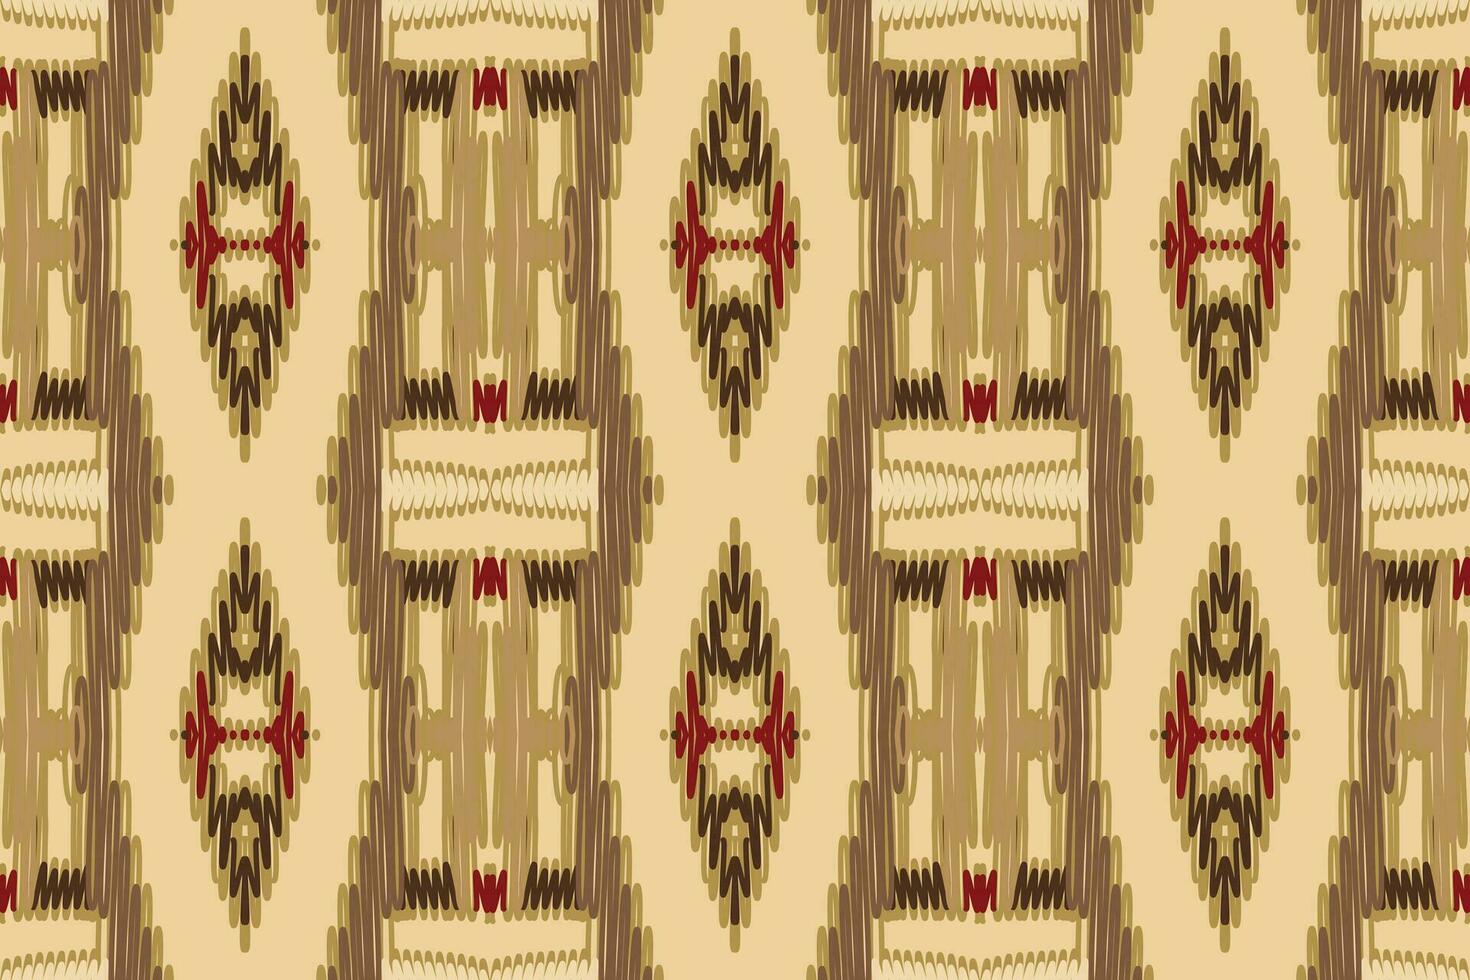 barock mönster sömlös australier ursprunglig mönster motiv broderi, ikat broderi vektor design för skriva ut 60s paisley slips färga damascus prydnad mattor hipster kurta pyjamas